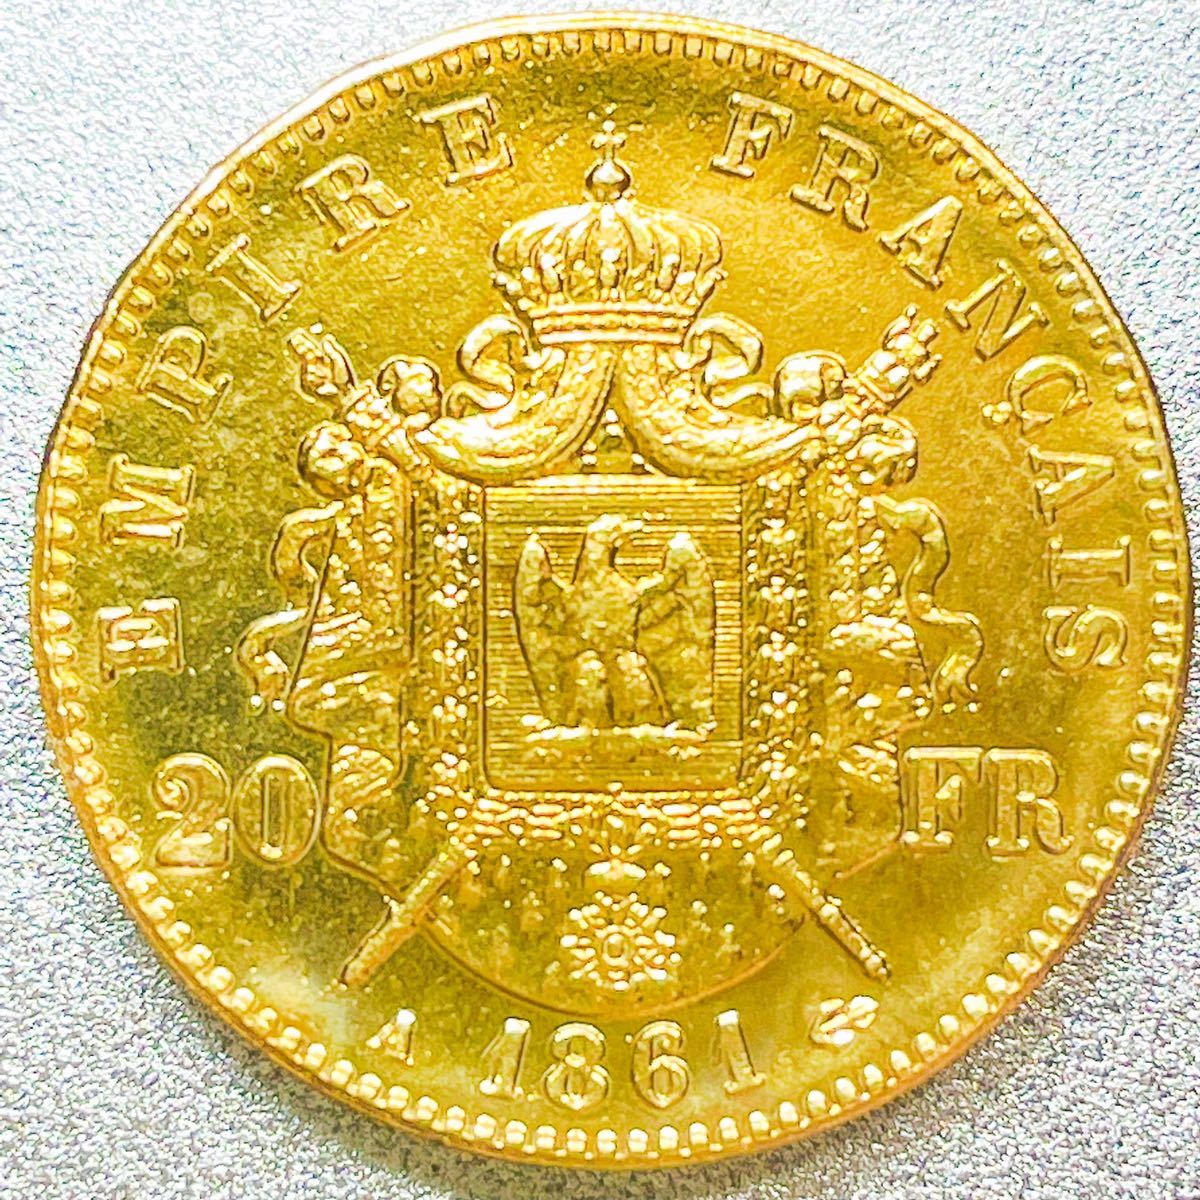 フランスナポレオン3世 20フラン金貨 古錢 1991.co.jp